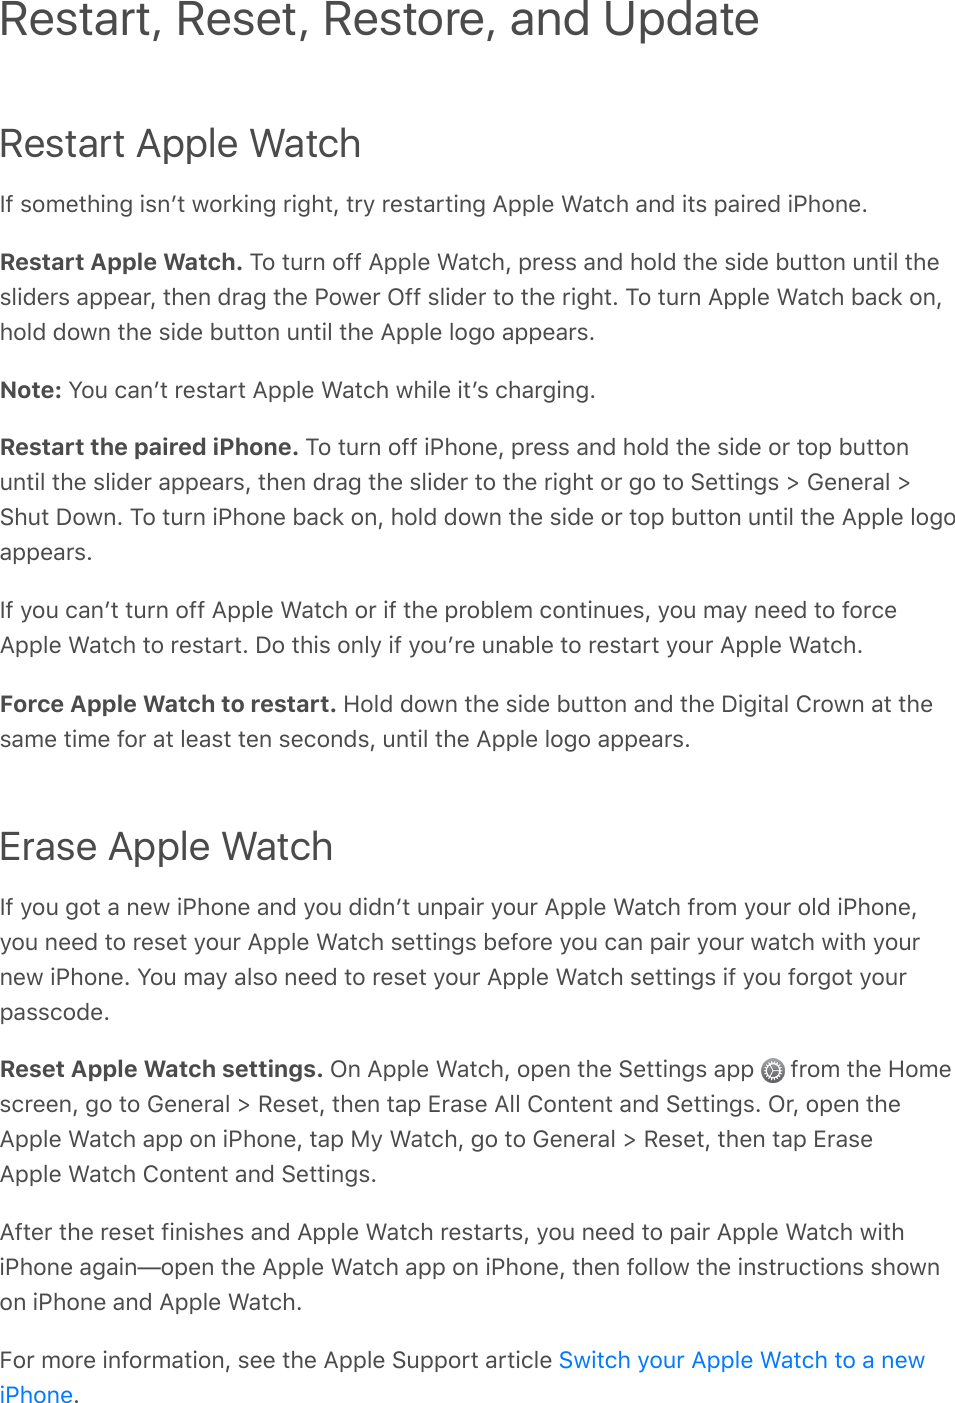 Restart Apple Watch]=&amp;$#;%/)+,-&amp;+$,`/&amp;0#*1+,-&amp;*+-)/I&amp;/*4&amp;*%$/&apos;*/+,-&amp;9CC&quot;%&amp;D&apos;/()&amp;&apos;,8&amp;+/$&amp;C&apos;+*%8&amp;+K)#,%?Restart Apple Watch. @#&amp;/2*,&amp;#==&amp;9CC&quot;%&amp;D&apos;/()I&amp;C*%$$&amp;&apos;,8&amp;)#&quot;8&amp;/)%&amp;$+8%&amp;&gt;2//#,&amp;2,/+&quot;&amp;/)%$&quot;+8%*$&amp;&apos;CC%&apos;*I&amp;/)%,&amp;8*&apos;-&amp;/)%&amp;K#0%*&amp;M==&amp;$&quot;+8%*&amp;/#&amp;/)%&amp;*+-)/?&amp;@#&amp;/2*,&amp;9CC&quot;%&amp;D&apos;/()&amp;&gt;&apos;(1&amp;#,I)#&quot;8&amp;8#0,&amp;/)%&amp;$+8%&amp;&gt;2//#,&amp;2,/+&quot;&amp;/)%&amp;9CC&quot;%&amp;&quot;#-#&amp;&apos;CC%&apos;*$?Note: 7#2&amp;(&apos;,`/&amp;*%$/&apos;*/&amp;9CC&quot;%&amp;D&apos;/()&amp;0)+&quot;%&amp;+/`$&amp;()&apos;*-+,-?Restart the paired iPhone. @#&amp;/2*,&amp;#==&amp;+K)#,%I&amp;C*%$$&amp;&apos;,8&amp;)#&quot;8&amp;/)%&amp;$+8%&amp;#*&amp;/#C&amp;&gt;2//#,2,/+&quot;&amp;/)%&amp;$&quot;+8%*&amp;&apos;CC%&apos;*$I&amp;/)%,&amp;8*&apos;-&amp;/)%&amp;$&quot;+8%*&amp;/#&amp;/)%&amp;*+-)/&amp;#*&amp;-#&amp;/#&amp;.%//+,-$&amp;d&amp;F%,%*&apos;&quot;&amp;d.)2/&amp;L#0,?&amp;@#&amp;/2*,&amp;+K)#,%&amp;&gt;&apos;(1&amp;#,I&amp;)#&quot;8&amp;8#0,&amp;/)%&amp;$+8%&amp;#*&amp;/#C&amp;&gt;2//#,&amp;2,/+&quot;&amp;/)%&amp;9CC&quot;%&amp;&quot;#-#&apos;CC%&apos;*$?]=&amp;4#2&amp;(&apos;,`/&amp;/2*,&amp;#==&amp;9CC&quot;%&amp;D&apos;/()&amp;#*&amp;+=&amp;/)%&amp;C*#&gt;&quot;%;&amp;(#,/+,2%$I&amp;4#2&amp;;&apos;4&amp;,%%8&amp;/#&amp;=#*(%9CC&quot;%&amp;D&apos;/()&amp;/#&amp;*%$/&apos;*/?&amp;L#&amp;/)+$&amp;#,&quot;4&amp;+=&amp;4#2`*%&amp;2,&apos;&gt;&quot;%&amp;/#&amp;*%$/&apos;*/&amp;4#2*&amp;9CC&quot;%&amp;D&apos;/()?Force Apple Watch to restart. 5#&quot;8&amp;8#0,&amp;/)%&amp;$+8%&amp;&gt;2//#,&amp;&apos;,8&amp;/)%&amp;L+-+/&apos;&quot;&amp;!*#0,&amp;&apos;/&amp;/)%$&apos;;%&amp;/+;%&amp;=#*&amp;&apos;/&amp;&quot;%&apos;$/&amp;/%,&amp;$%(#,8$I&amp;2,/+&quot;&amp;/)%&amp;9CC&quot;%&amp;&quot;#-#&amp;&apos;CC%&apos;*$?Erase Apple Watch]=&amp;4#2&amp;-#/&amp;&apos;&amp;,%0&amp;+K)#,%&amp;&apos;,8&amp;4#2&amp;8+8,`/&amp;2,C&apos;+*&amp;4#2*&amp;9CC&quot;%&amp;D&apos;/()&amp;=*#;&amp;4#2*&amp;#&quot;8&amp;+K)#,%I4#2&amp;,%%8&amp;/#&amp;*%$%/&amp;4#2*&amp;9CC&quot;%&amp;D&apos;/()&amp;$%//+,-$&amp;&gt;%=#*%&amp;4#2&amp;(&apos;,&amp;C&apos;+*&amp;4#2*&amp;0&apos;/()&amp;0+/)&amp;4#2*,%0&amp;+K)#,%?&amp;7#2&amp;;&apos;4&amp;&apos;&quot;$#&amp;,%%8&amp;/#&amp;*%$%/&amp;4#2*&amp;9CC&quot;%&amp;D&apos;/()&amp;$%//+,-$&amp;+=&amp;4#2&amp;=#*-#/&amp;4#2*C&apos;$$(#8%?Reset Apple Watch settings. M,&amp;9CC&quot;%&amp;D&apos;/()I&amp;#C%,&amp;/)%&amp;.%//+,-$&amp;&apos;CC&amp; &amp;=*#;&amp;/)%&amp;5#;%$(*%%,I&amp;-#&amp;/#&amp;F%,%*&apos;&quot;&amp;d&amp;3%$%/I&amp;/)%,&amp;/&apos;C&amp;h*&apos;$%&amp;9&quot;&quot;&amp;!#,/%,/&amp;&apos;,8&amp;.%//+,-$?&amp;M*I&amp;#C%,&amp;/)%9CC&quot;%&amp;D&apos;/()&amp;&apos;CC&amp;#,&amp;+K)#,%I&amp;/&apos;C&amp;J4&amp;D&apos;/()I&amp;-#&amp;/#&amp;F%,%*&apos;&quot;&amp;d&amp;3%$%/I&amp;/)%,&amp;/&apos;C&amp;h*&apos;$%9CC&quot;%&amp;D&apos;/()&amp;!#,/%,/&amp;&apos;,8&amp;.%//+,-$?9=/%*&amp;/)%&amp;*%$%/&amp;=+,+$)%$&amp;&apos;,8&amp;9CC&quot;%&amp;D&apos;/()&amp;*%$/&apos;*/$I&amp;4#2&amp;,%%8&amp;/#&amp;C&apos;+*&amp;9CC&quot;%&amp;D&apos;/()&amp;0+/)+K)#,%&amp;&apos;-&apos;+,V#C%,&amp;/)%&amp;9CC&quot;%&amp;D&apos;/()&amp;&apos;CC&amp;#,&amp;+K)#,%I&amp;/)%,&amp;=#&quot;&quot;#0&amp;/)%&amp;+,$/*2(/+#,$&amp;$)#0,#,&amp;+K)#,%&amp;&apos;,8&amp;9CC&quot;%&amp;D&apos;/()?H#*&amp;;#*%&amp;+,=#*;&apos;/+#,I&amp;$%%&amp;/)%&amp;9CC&quot;%&amp;.2CC#*/&amp;&apos;*/+(&quot;%&amp;?Restart, Reset, Restore, and Update.0+/()&amp;4#2*&amp;9CC&quot;%&amp;D&apos;/()&amp;/#&amp;&apos;&amp;,%0+K)#,%